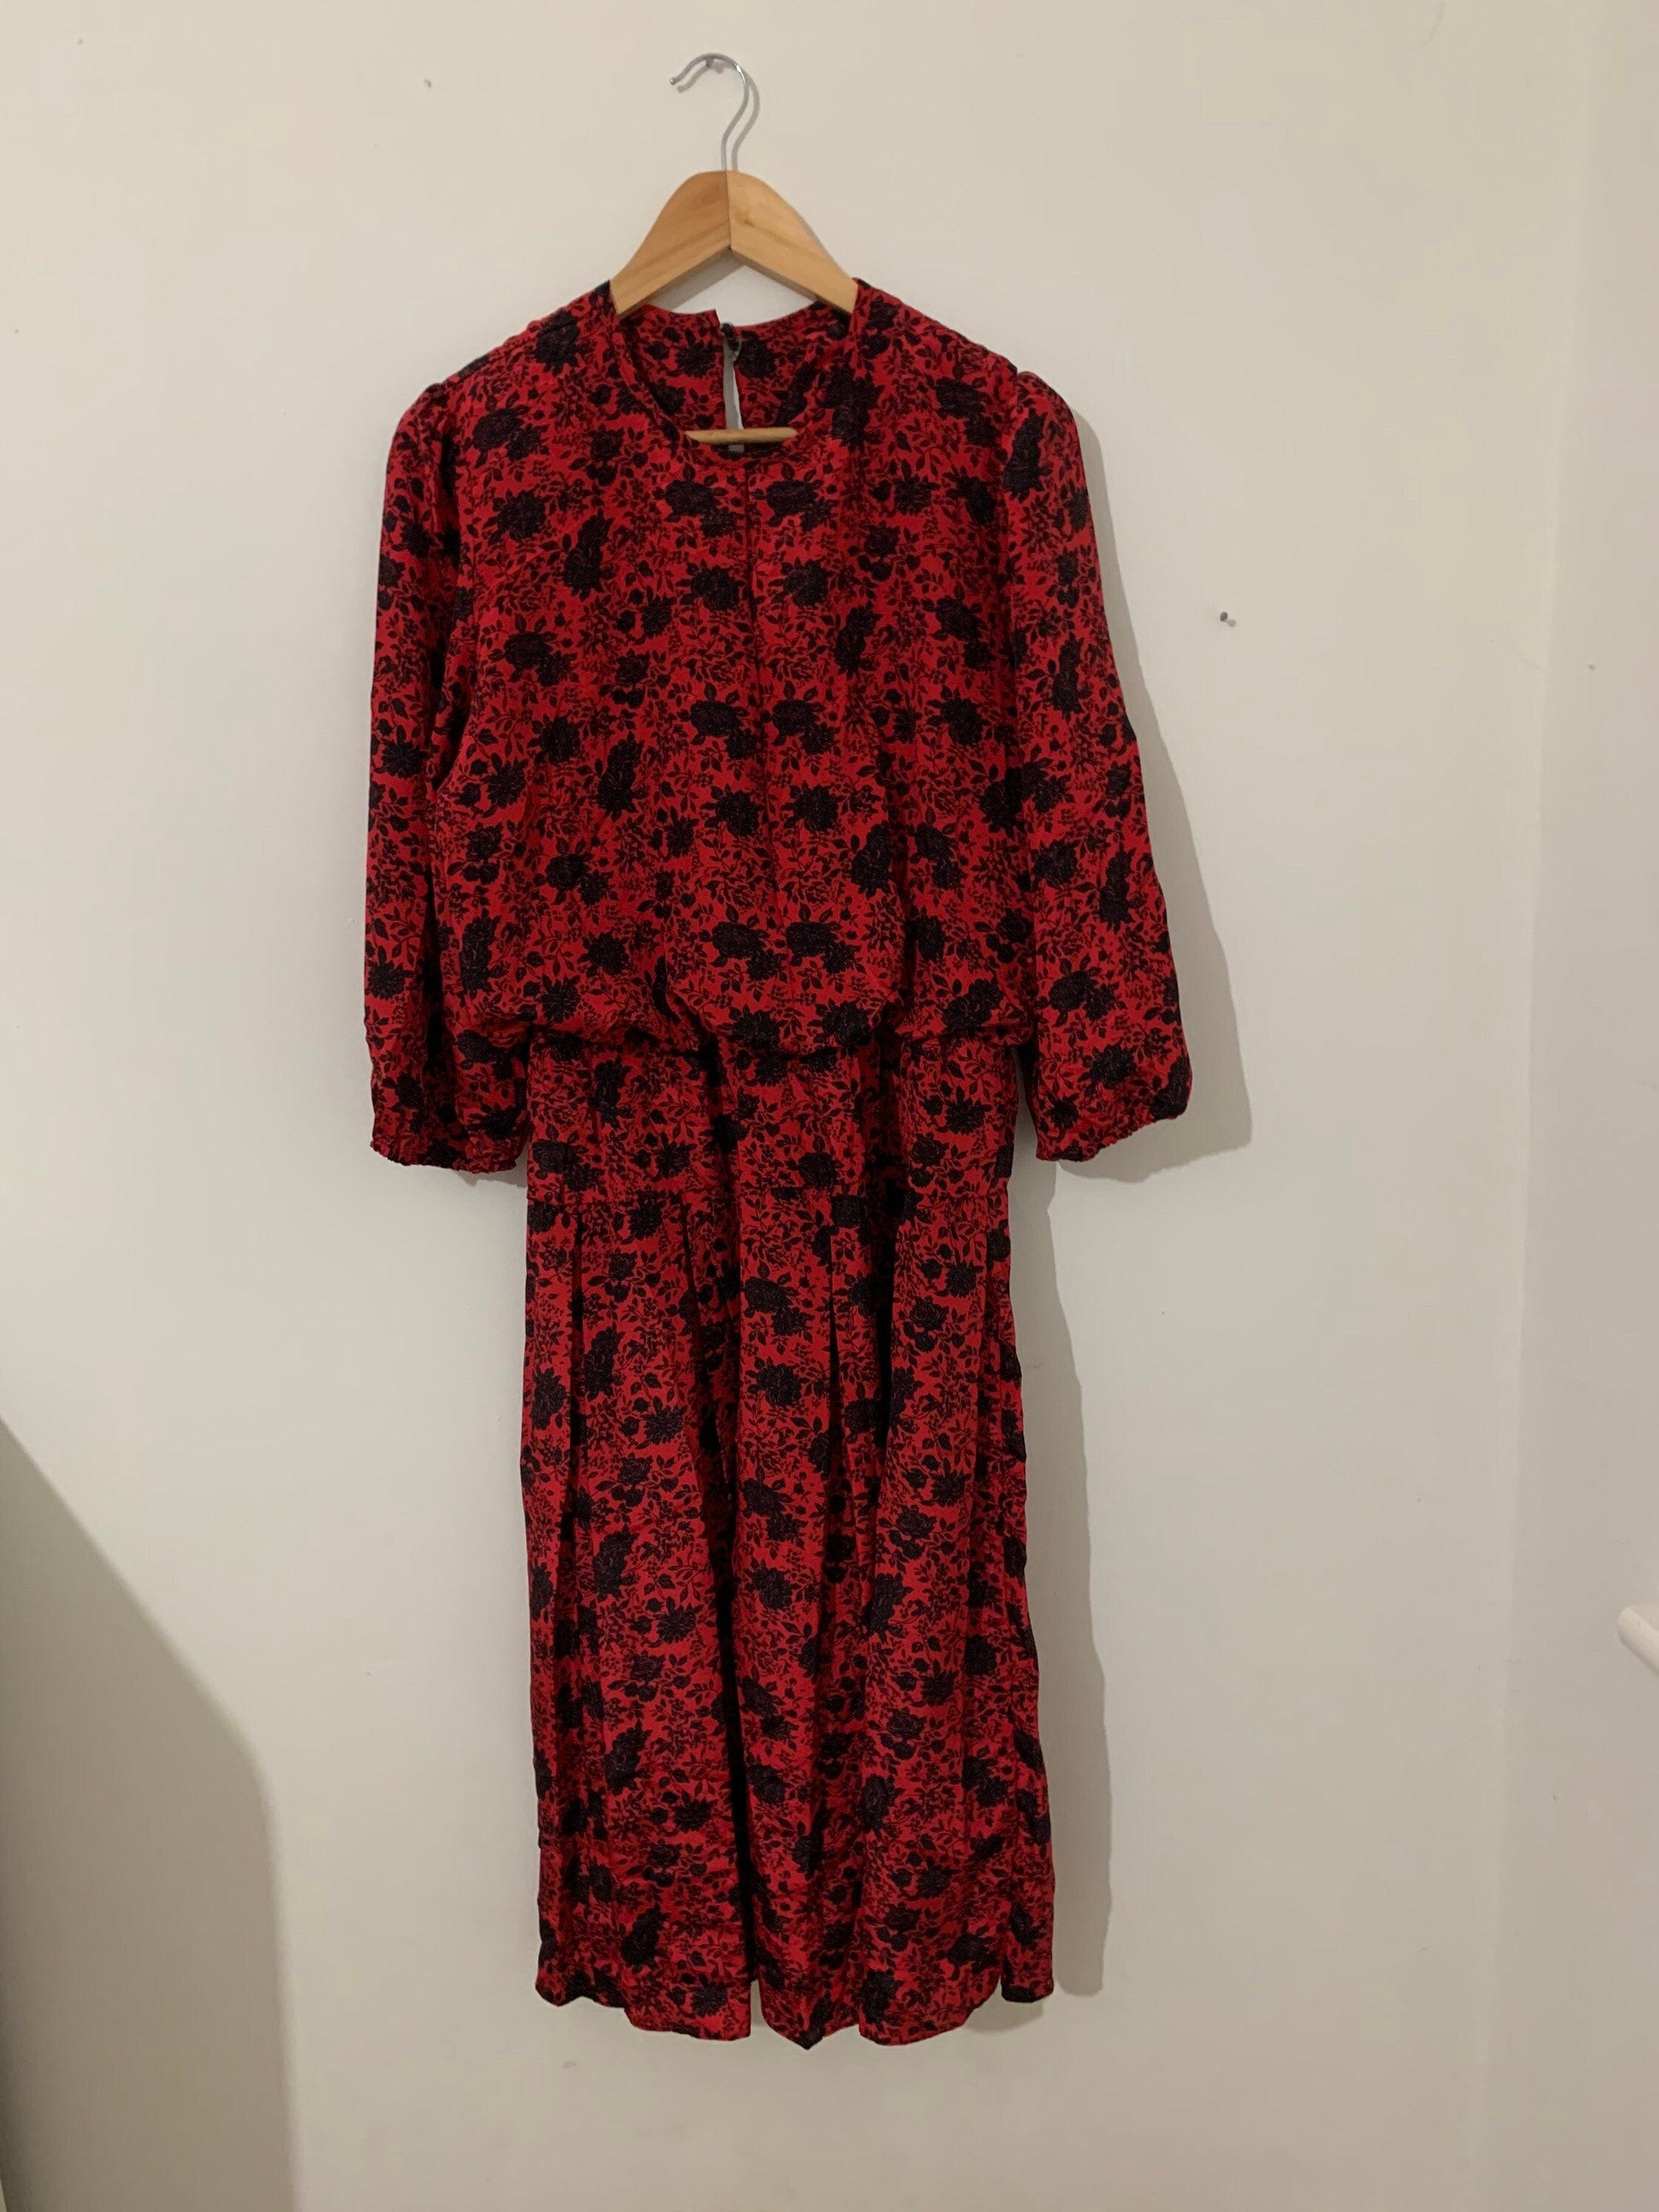 1980s Vintage Dress red - red & black dress - size 14-16, Vintage ...